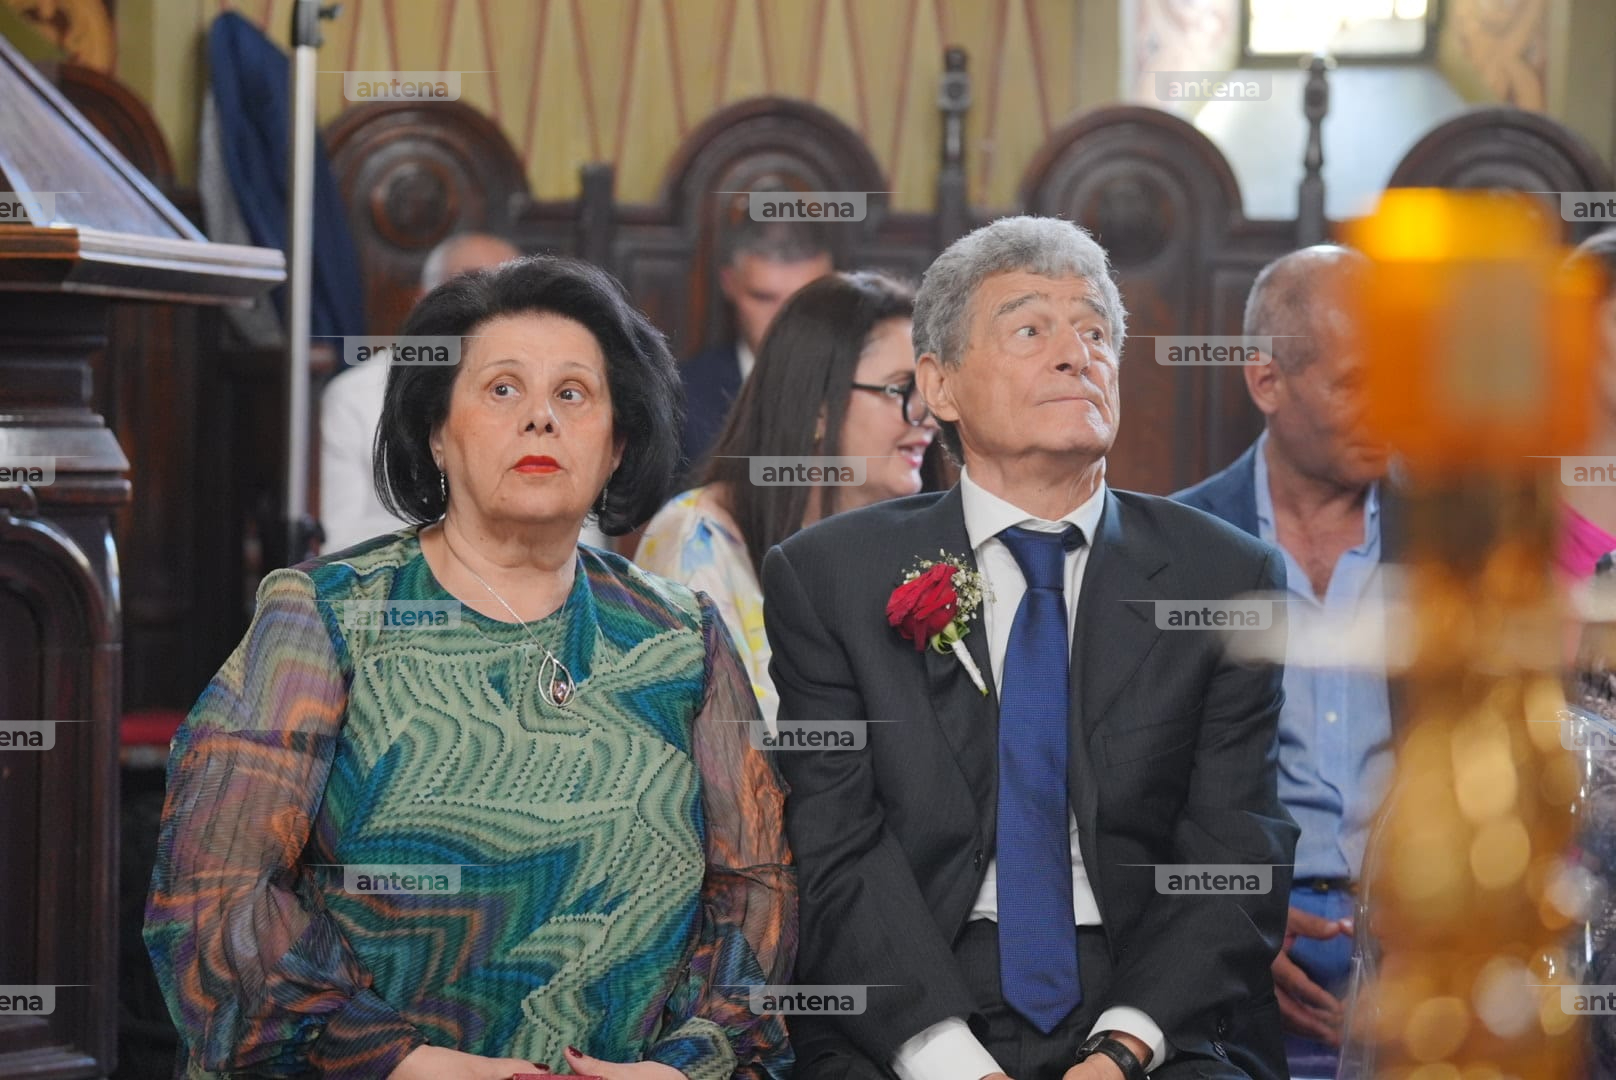 Imagini emoționante cu bunicii lui Ianis Hagi